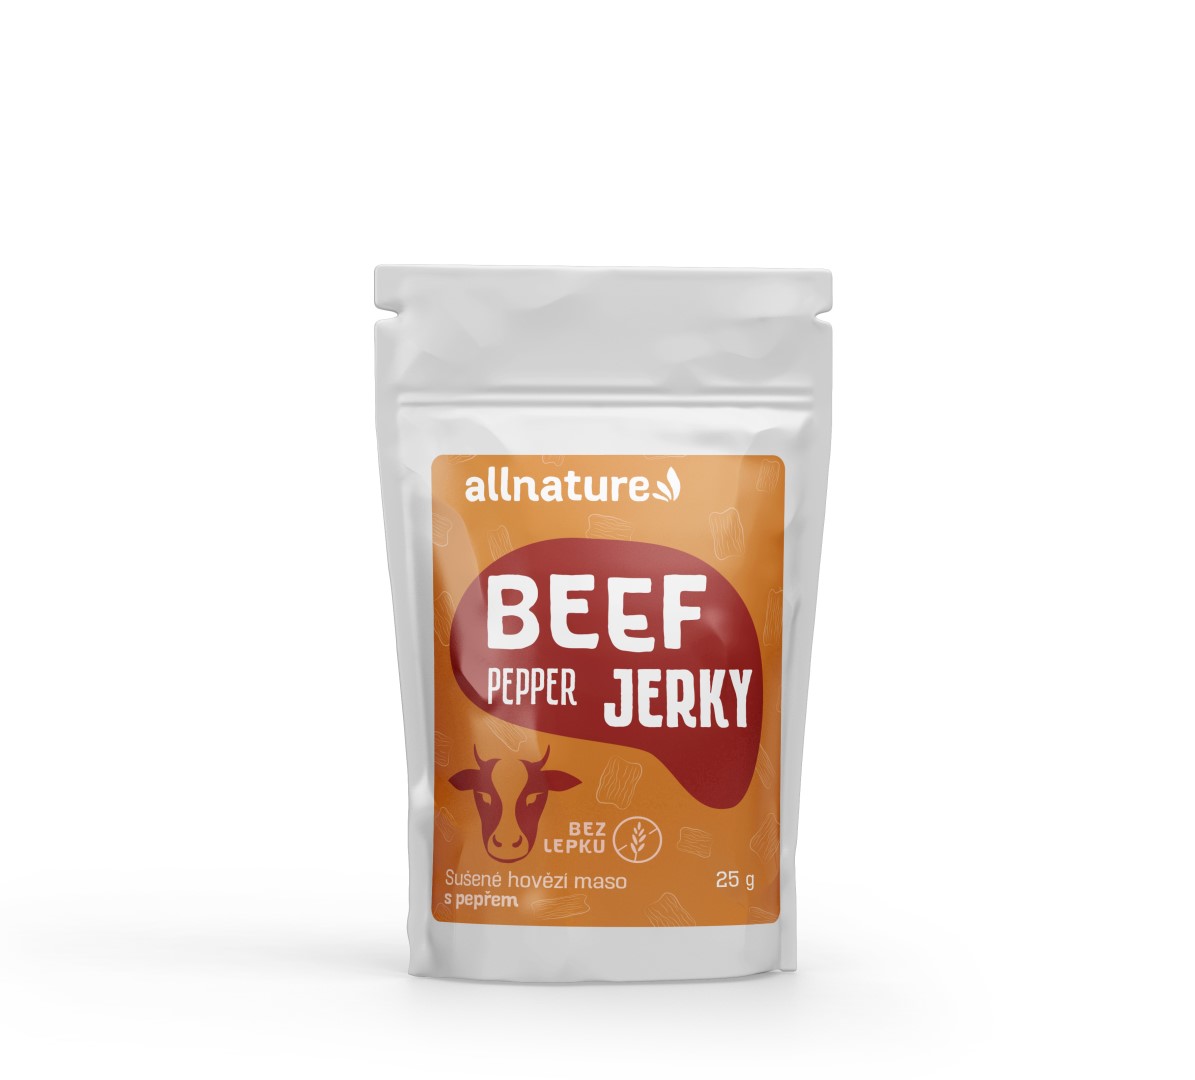 Allnature BEEF pepper jerky - sušené hovězí maso s pepřem 25g